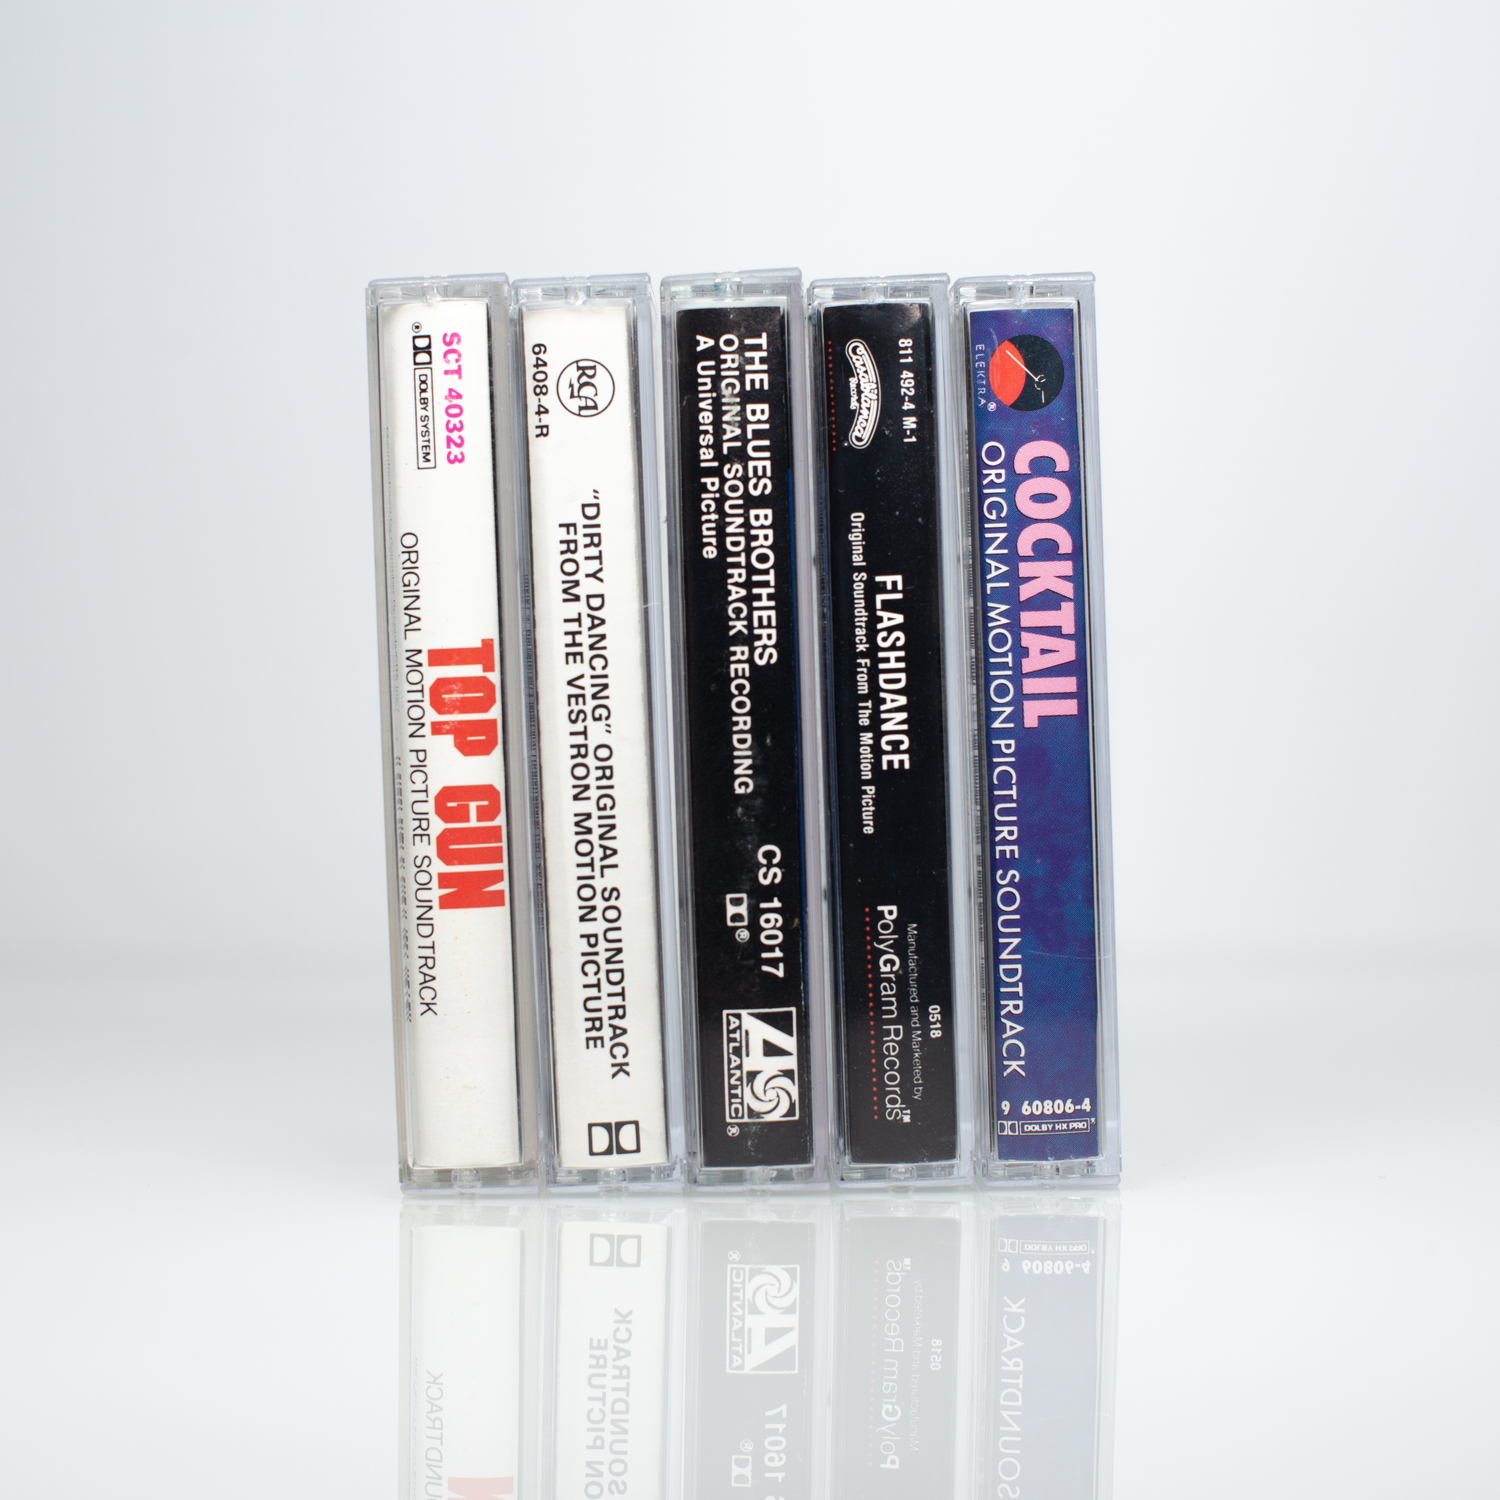 Bandes originales de films des années 80 - Ensemble de 5 cassettes vintage